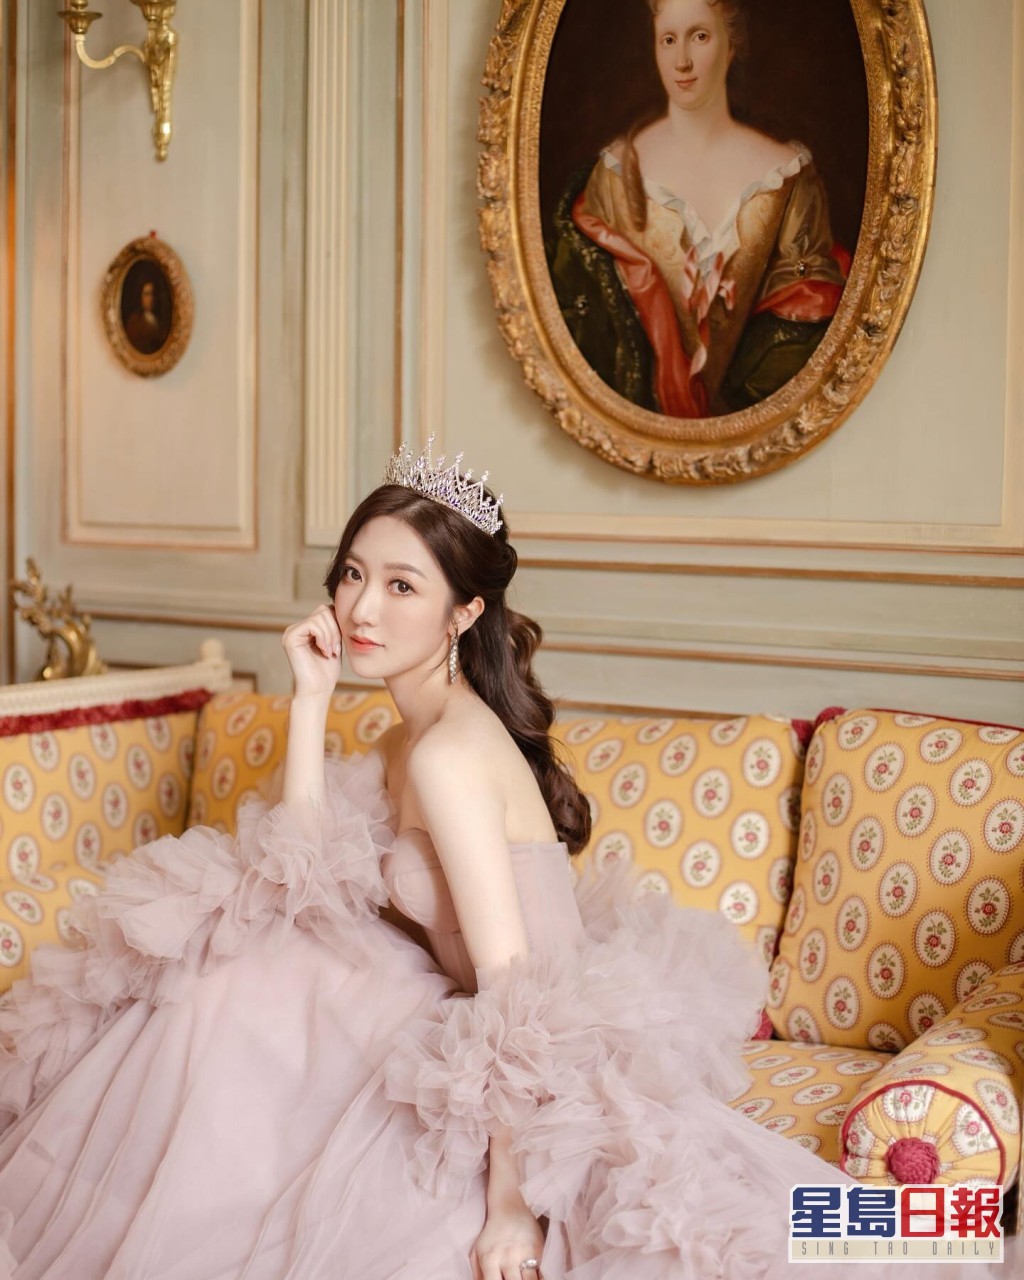 何依婷换上一袭粉红色低胸婚纱裙，裙摆与手袖位置采用荷叶边设计，加上头戴镶钻皇冠，俨如公主般梦幻。